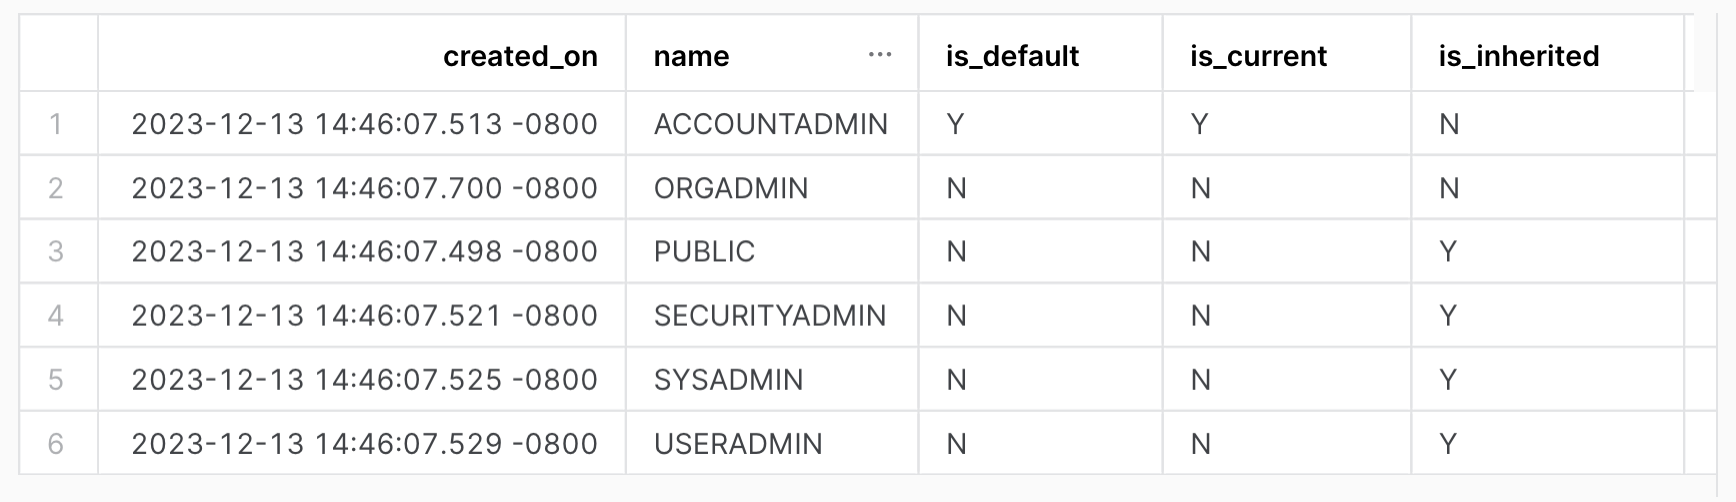 Mostre todas as funções na conta. Saída da tabela com as seguintes colunas: created_on, name, is_default, is_current, is_inherited.